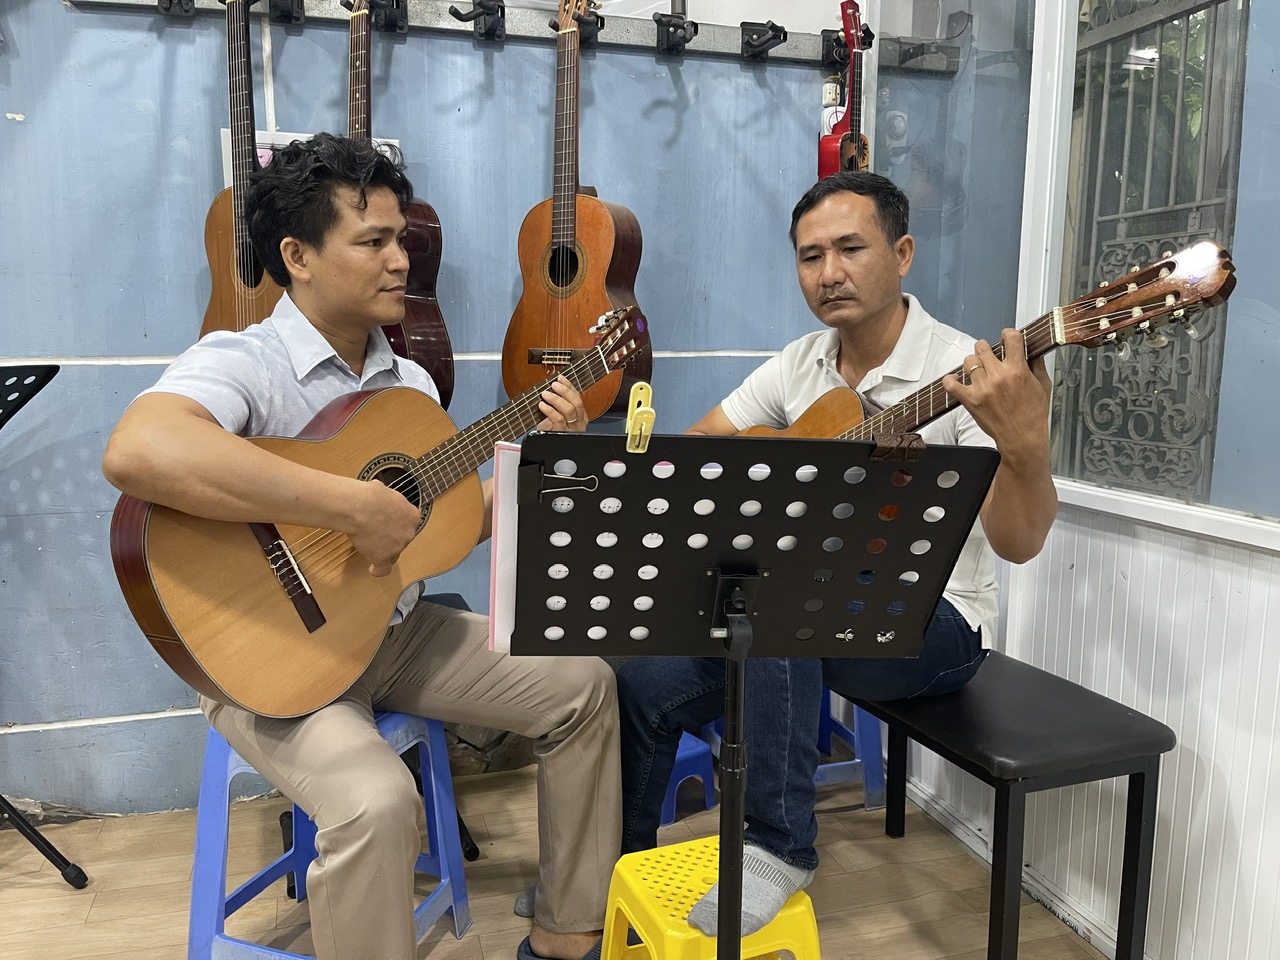 Hướng dẫn của thầy giáo với học viên lớn tuổi muốn theo đuổi bộ môn guitar